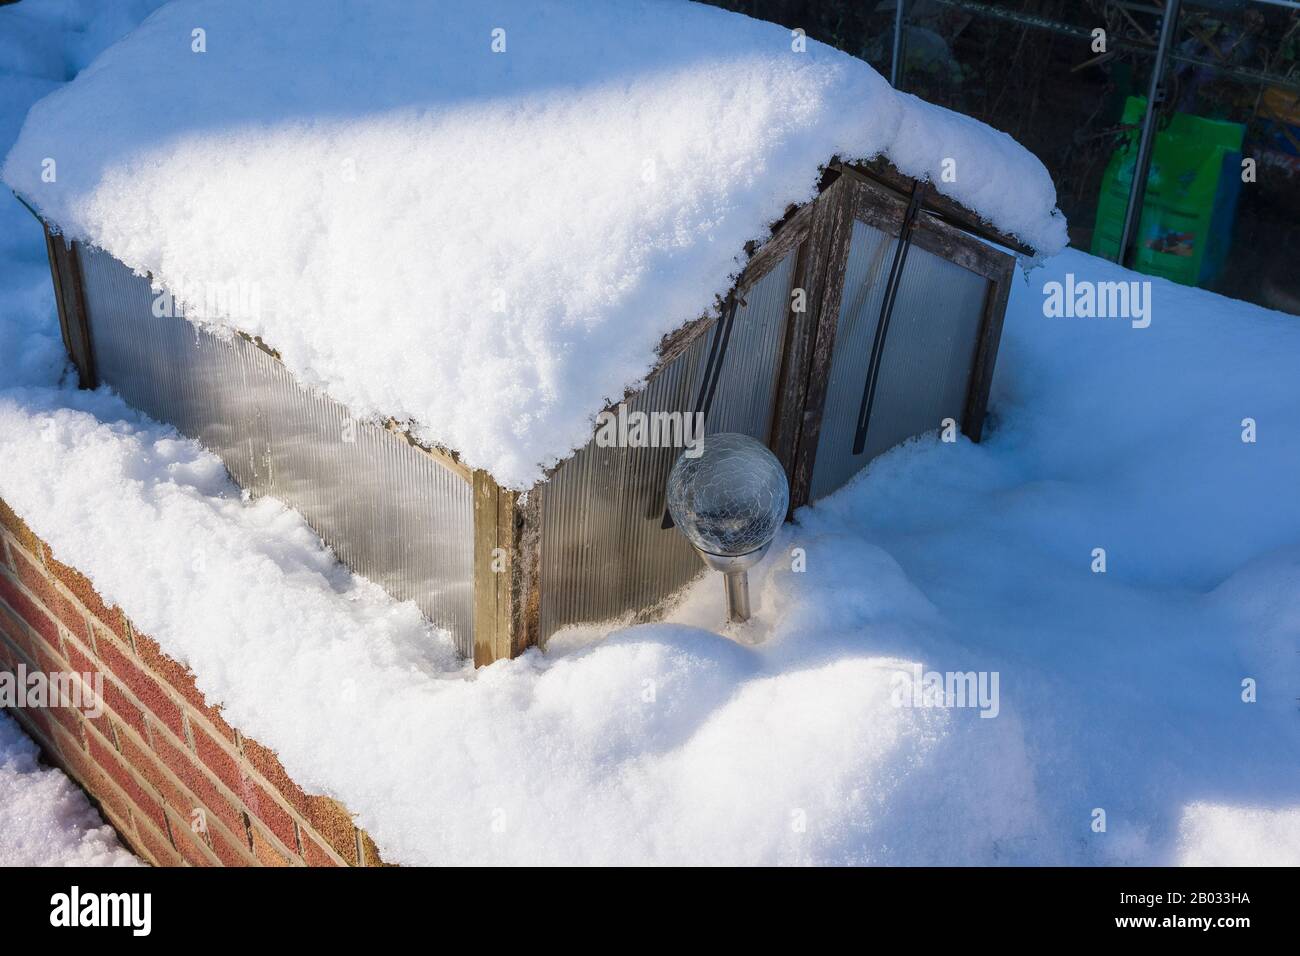 La chute de neige ajoute une protection thermique à un cadre froid placé sur un semoir en briques surélevées dans un jardin anglais en hiver Banque D'Images